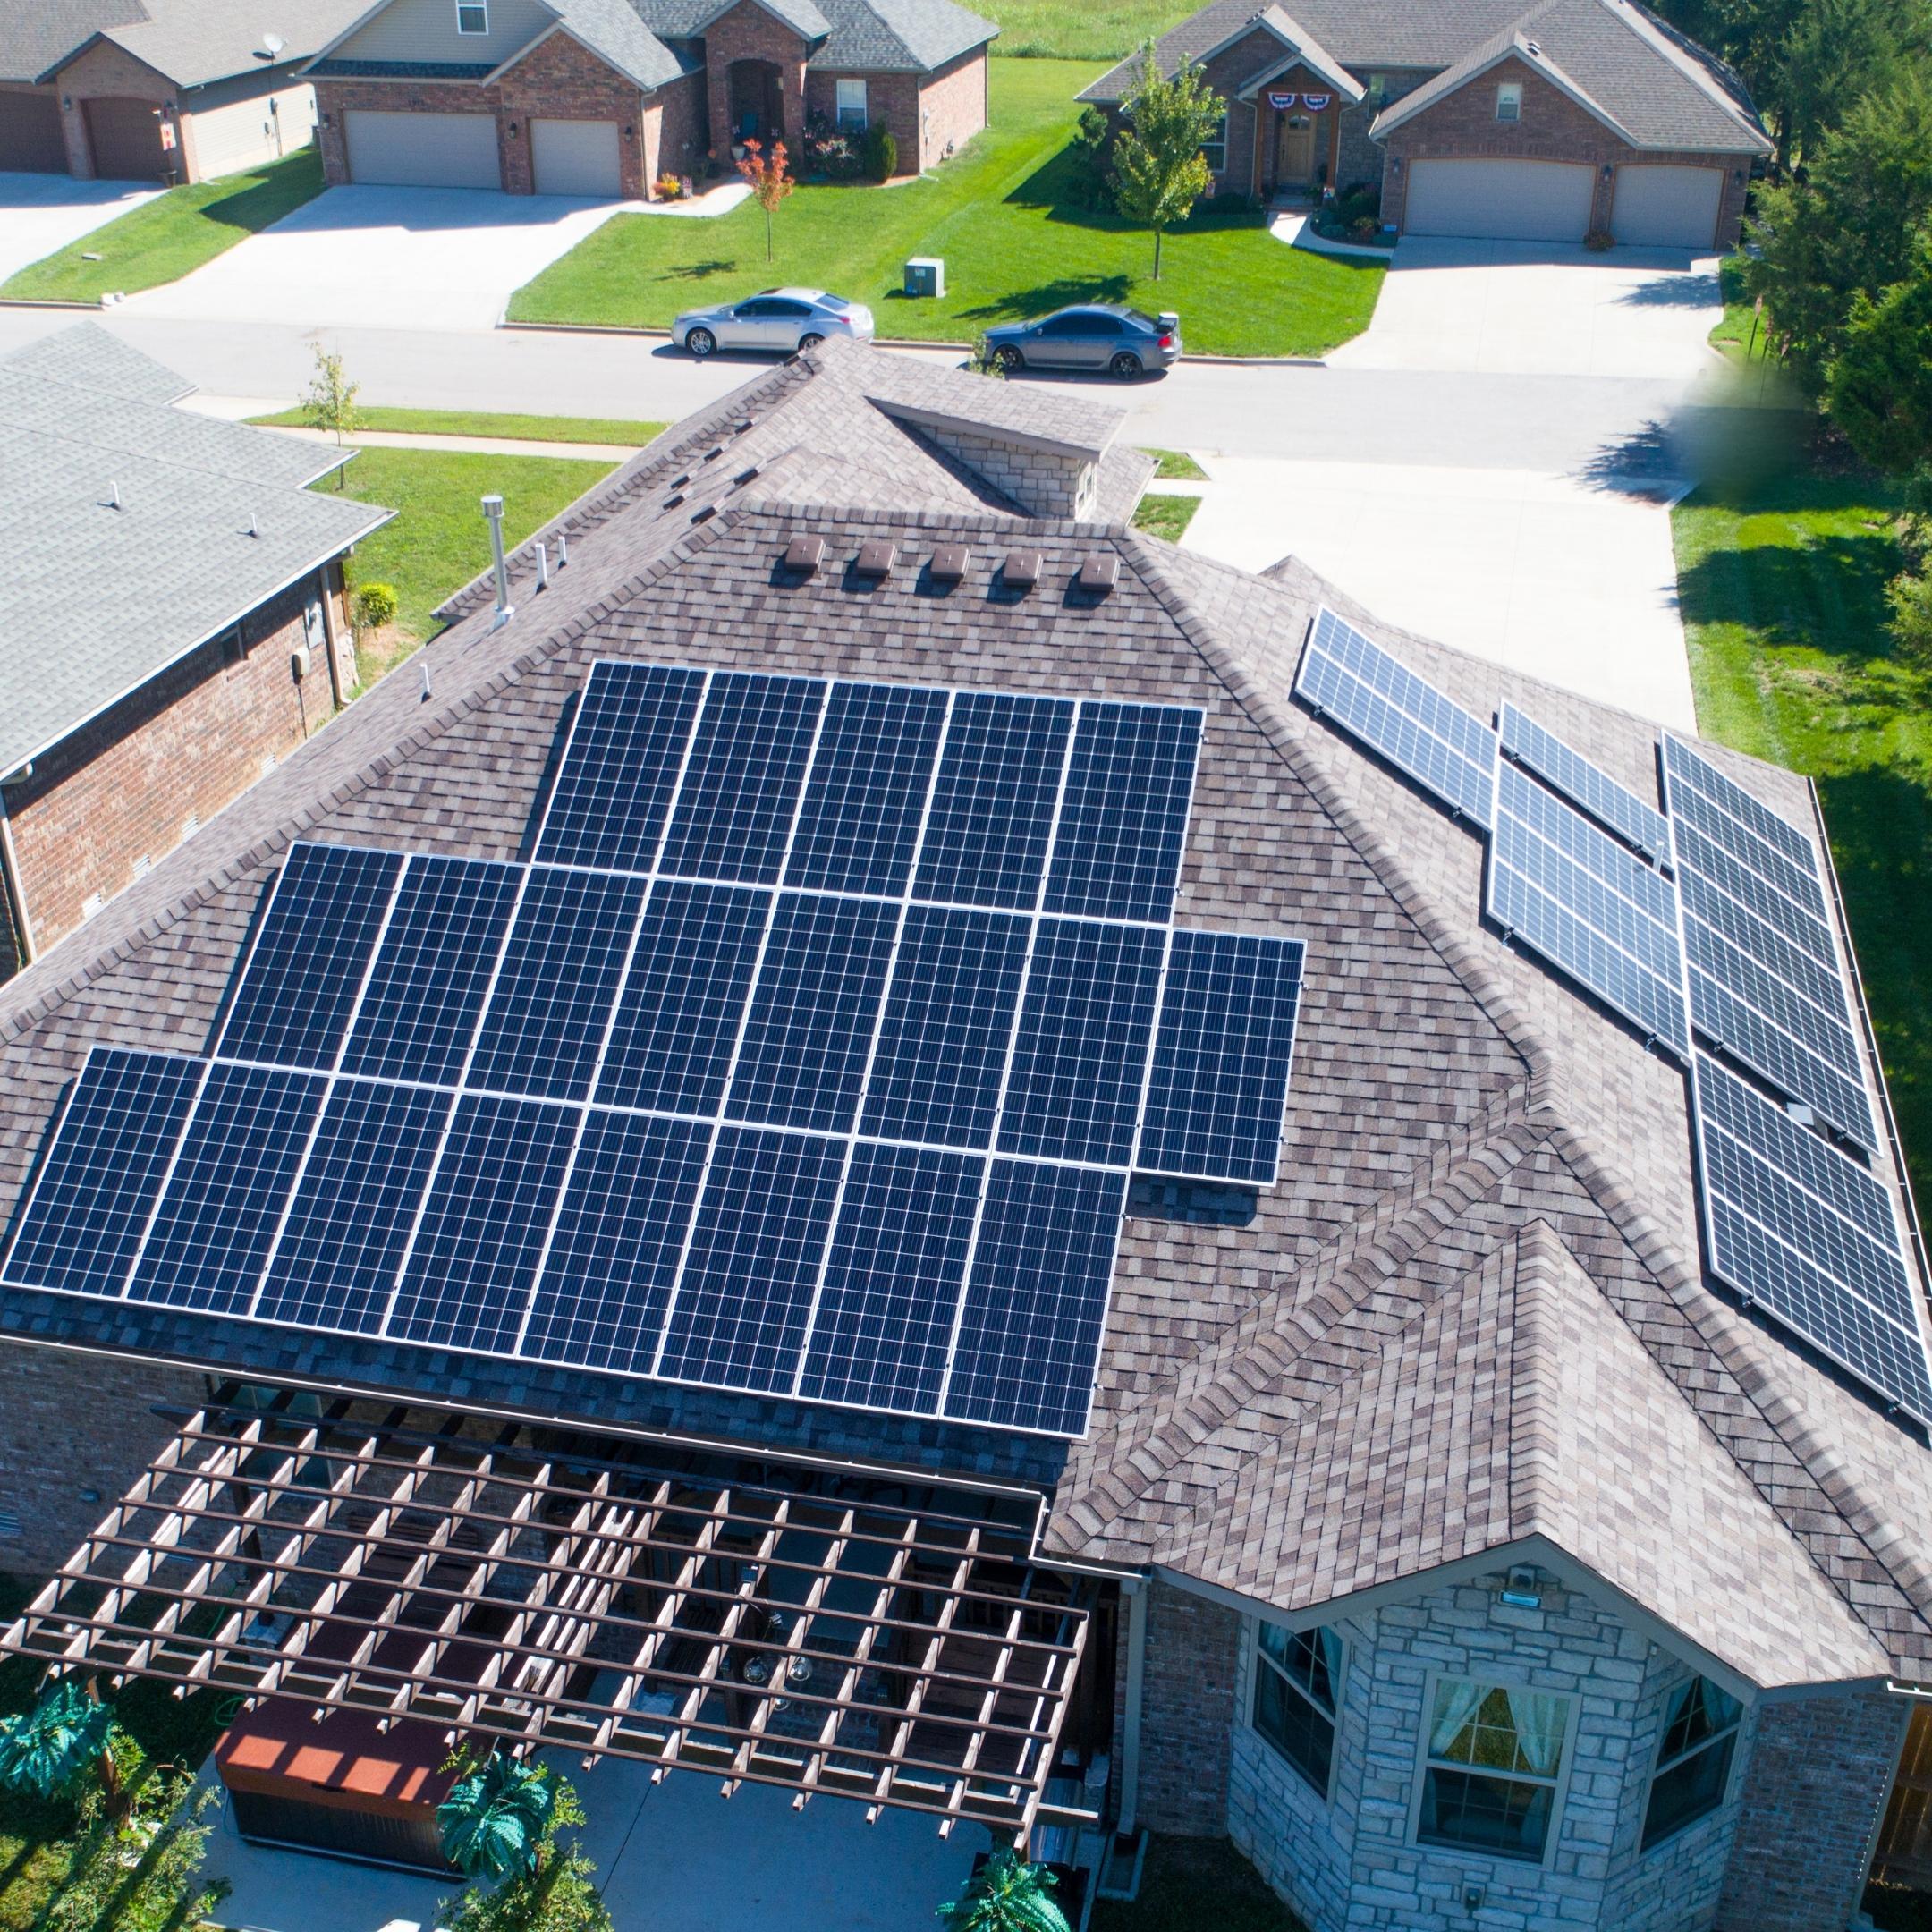 Strafford MO Solar Panel Install Roof